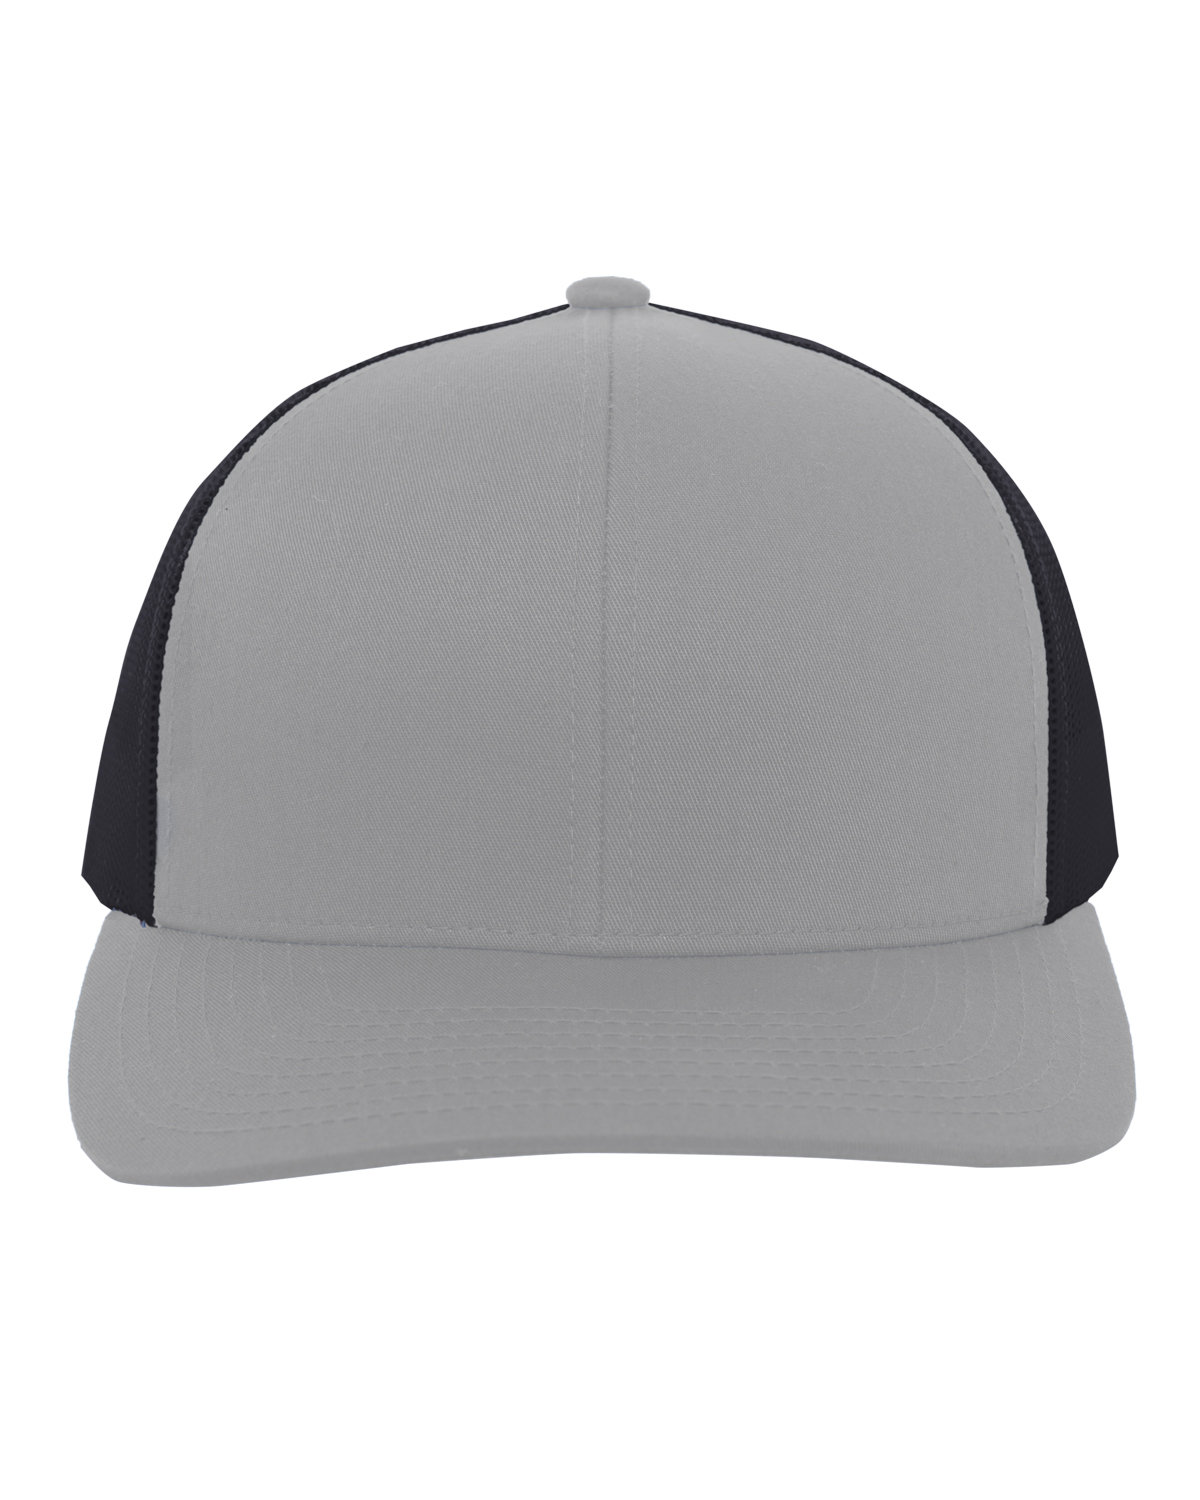 Pacific Headwear Trucker Snapback Hat HTH GRY/ LT CHAR 